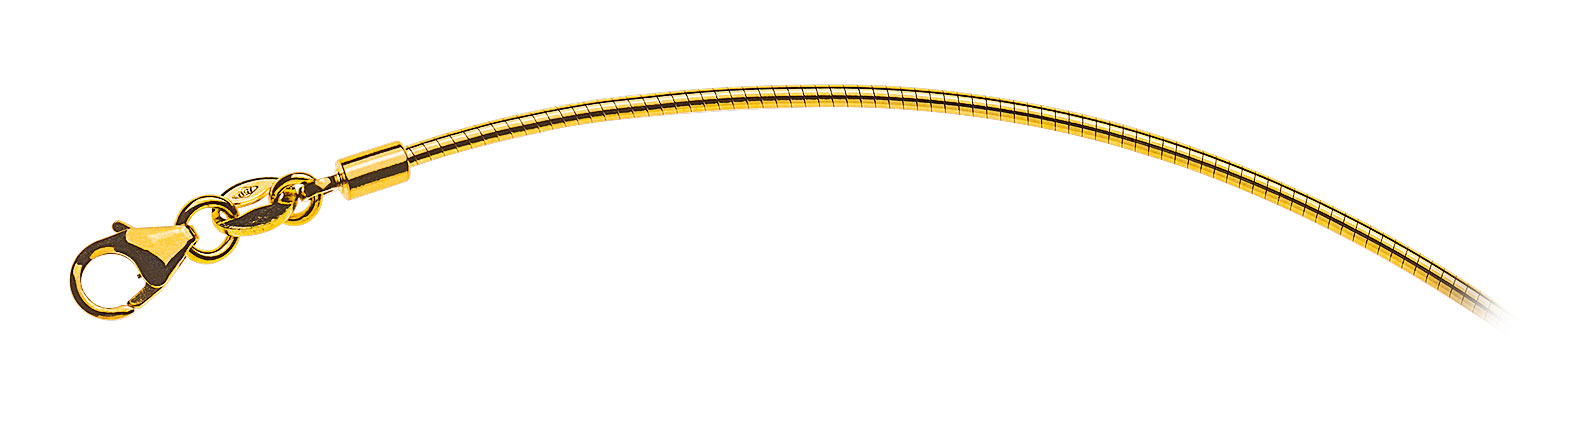 AURONOS Prestige Halskette Gelbgold 18K Omegakette 45cm 1.4mm